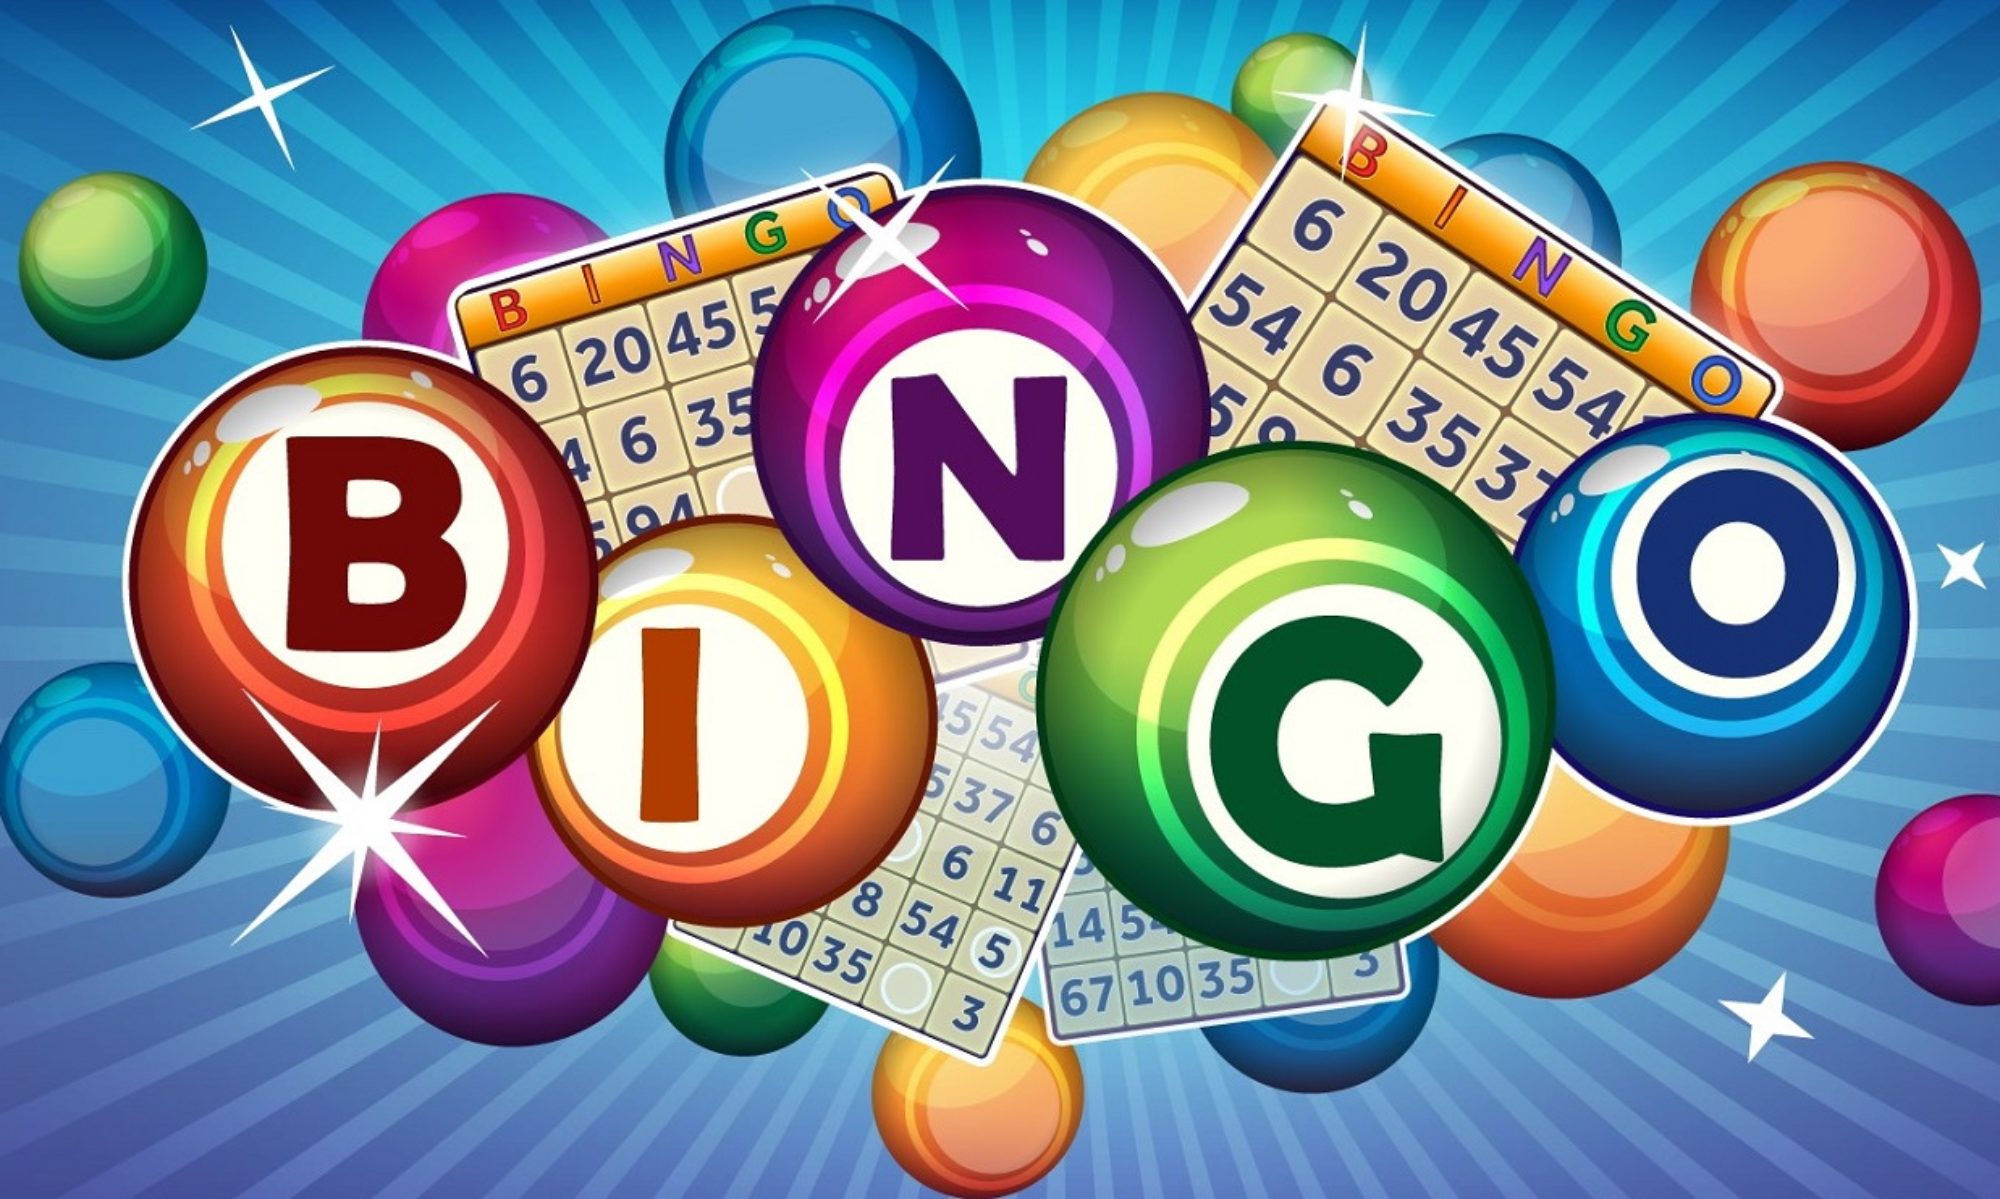 bingo balls spelling bingo